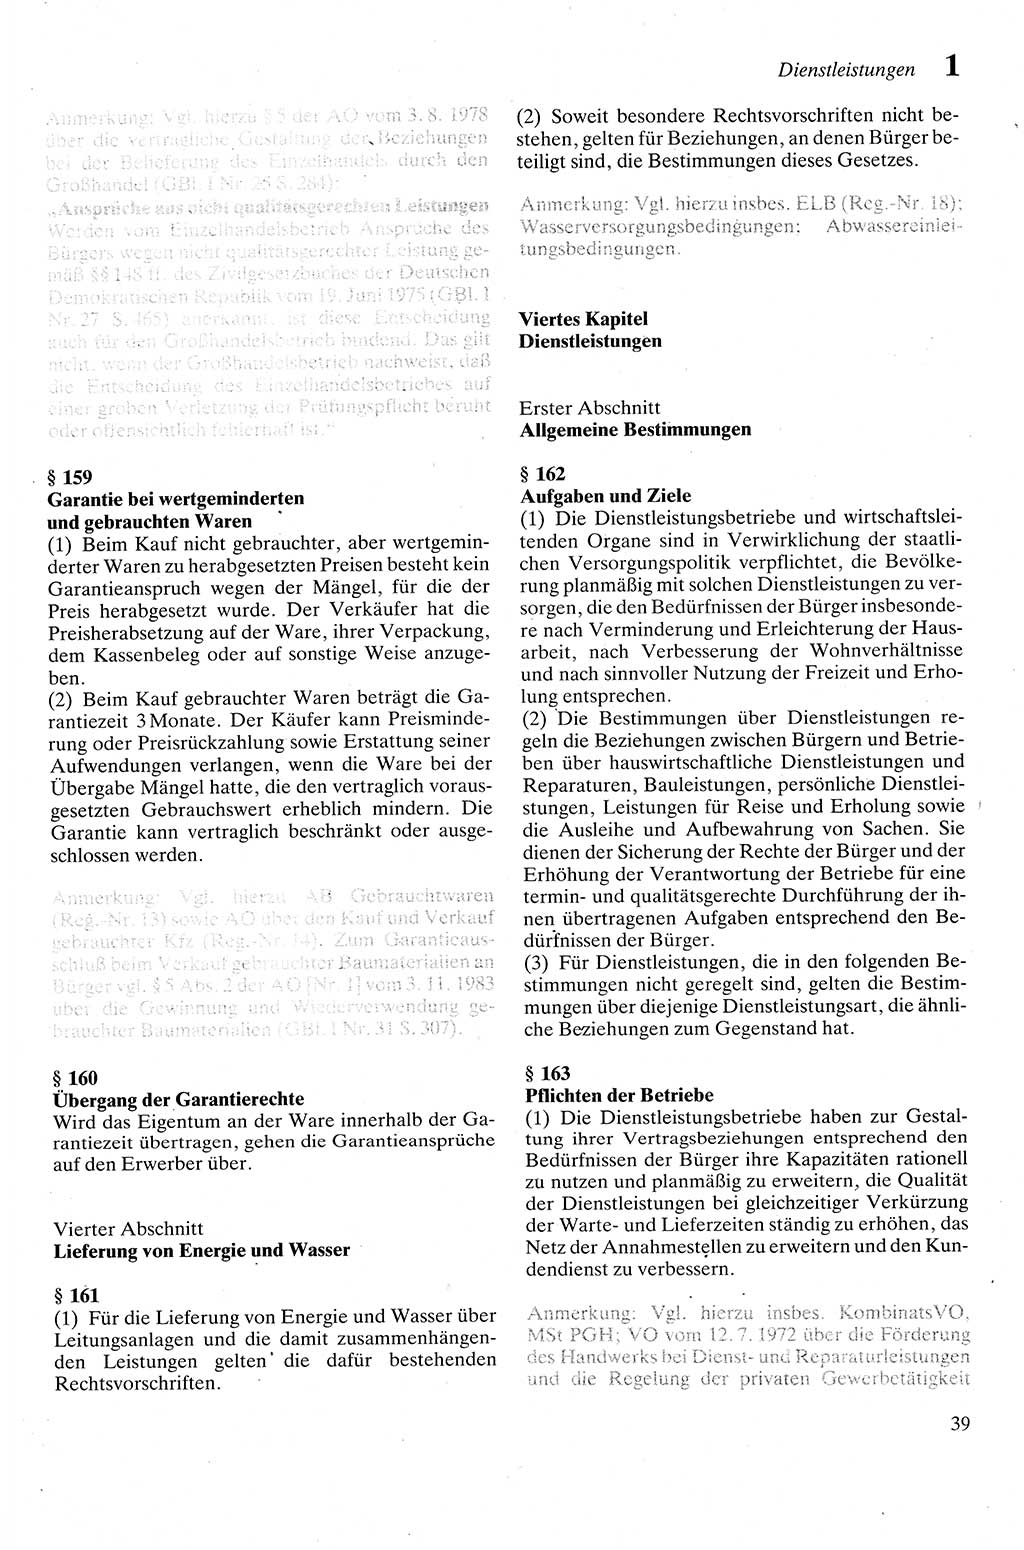 Zivilgesetzbuch (ZVG) sowie angrenzende Gesetze und Bestimmungen [Deutsche Demokratische Republik (DDR)] 1975, Seite 39 (ZGB Ges. Best. DDR 1975, S. 39)